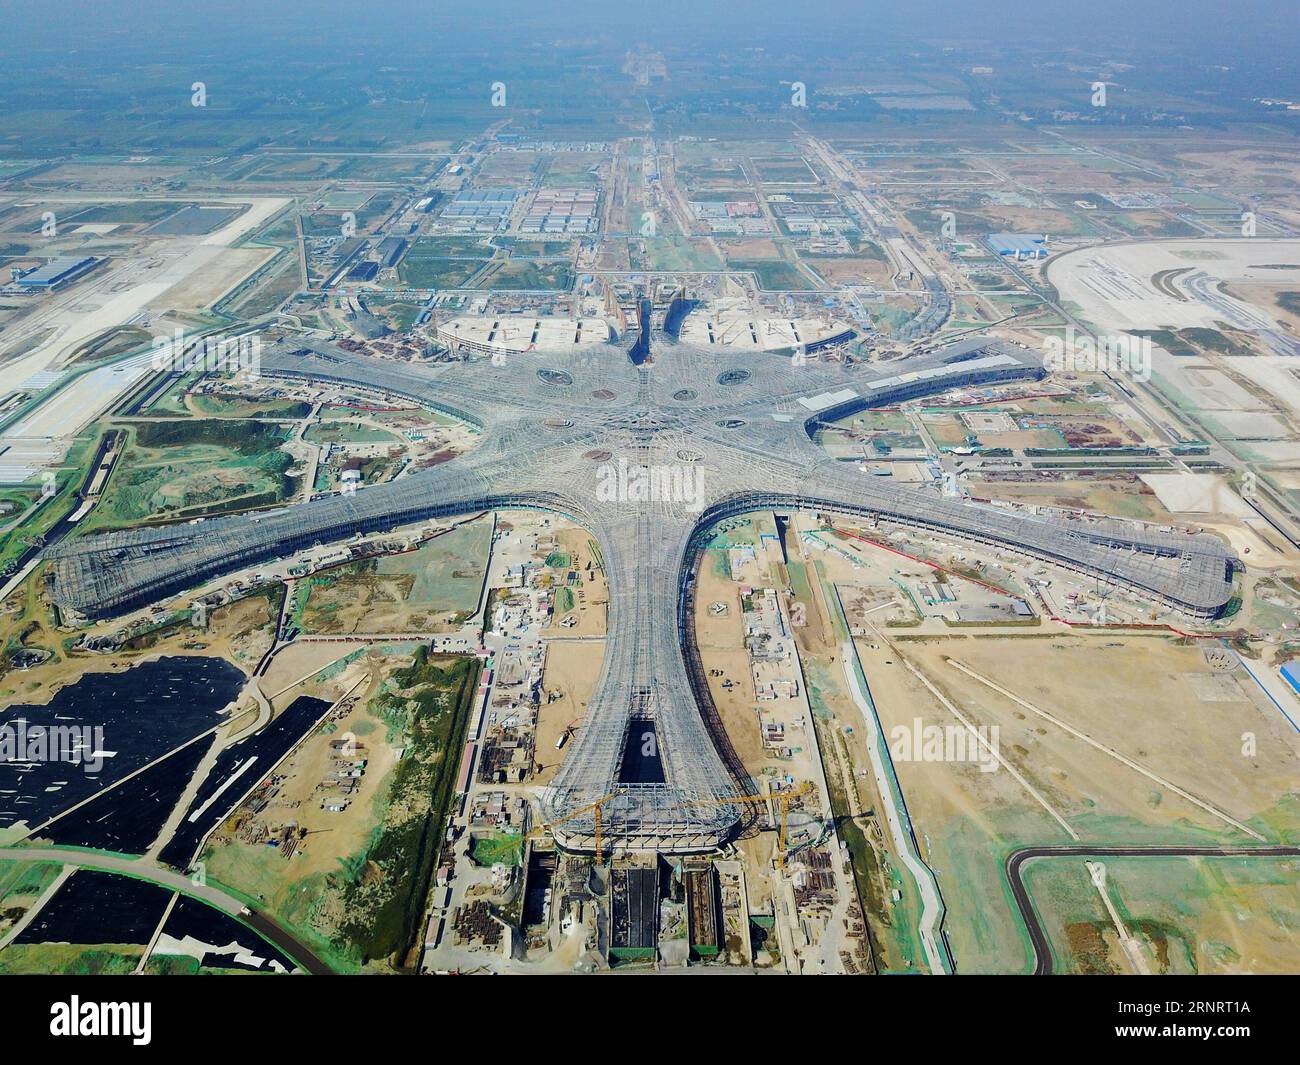 (171014) -- PECHINO, 14 ottobre 2017 -- la foto del file scattata il 18 settembre 2017 mostra il terminal del nuovo aeroporto internazionale di Pechino in costruzione a Pechino, capitale della Cina. Pechino è testimone di un grande cambiamento negli ultimi cinque anni e la città continuerà a concentrarsi sullo sviluppo coordinato nelle regioni di Pechino, Tianjin e Hebei e sull'obiettivo di rimuovere le funzioni non capitali. ) (Zkr) CHINA-BEIJING-DEVELOPMENT(CN) JuxHuanzong PUBLICATIONxNOTxINxCHN Foto Stock